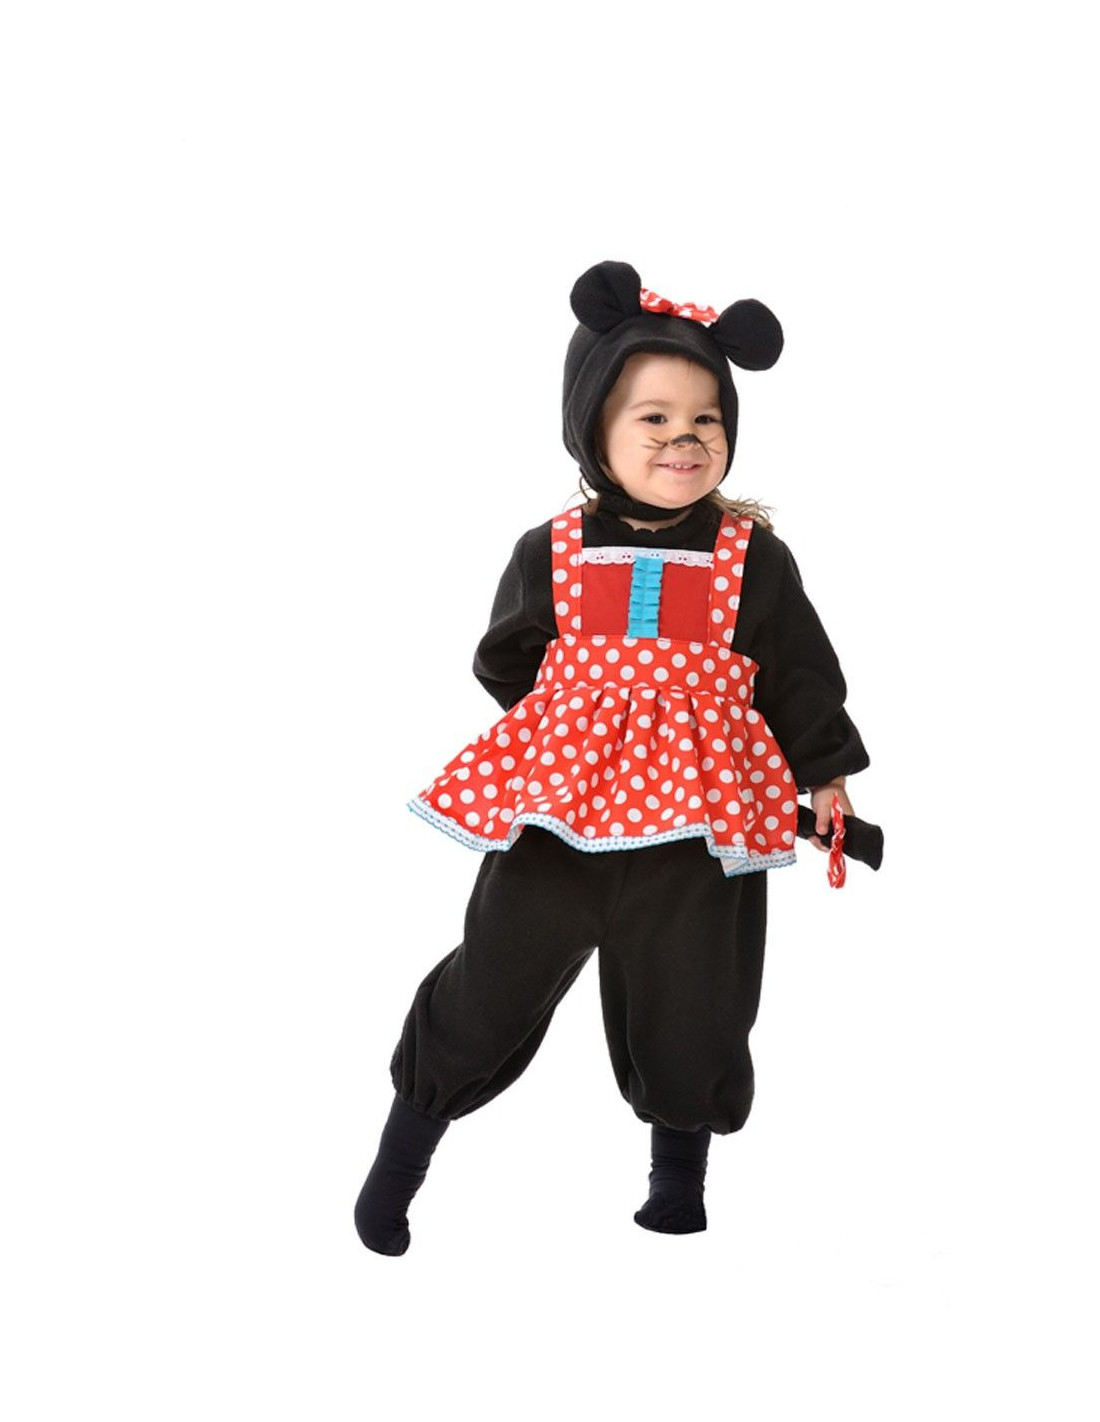 Disneybaby Mickey Mouse Costume. Disney baby costume  Disfraz mickey bebe,  Sesion de fotos bebes, Disfraz bebe